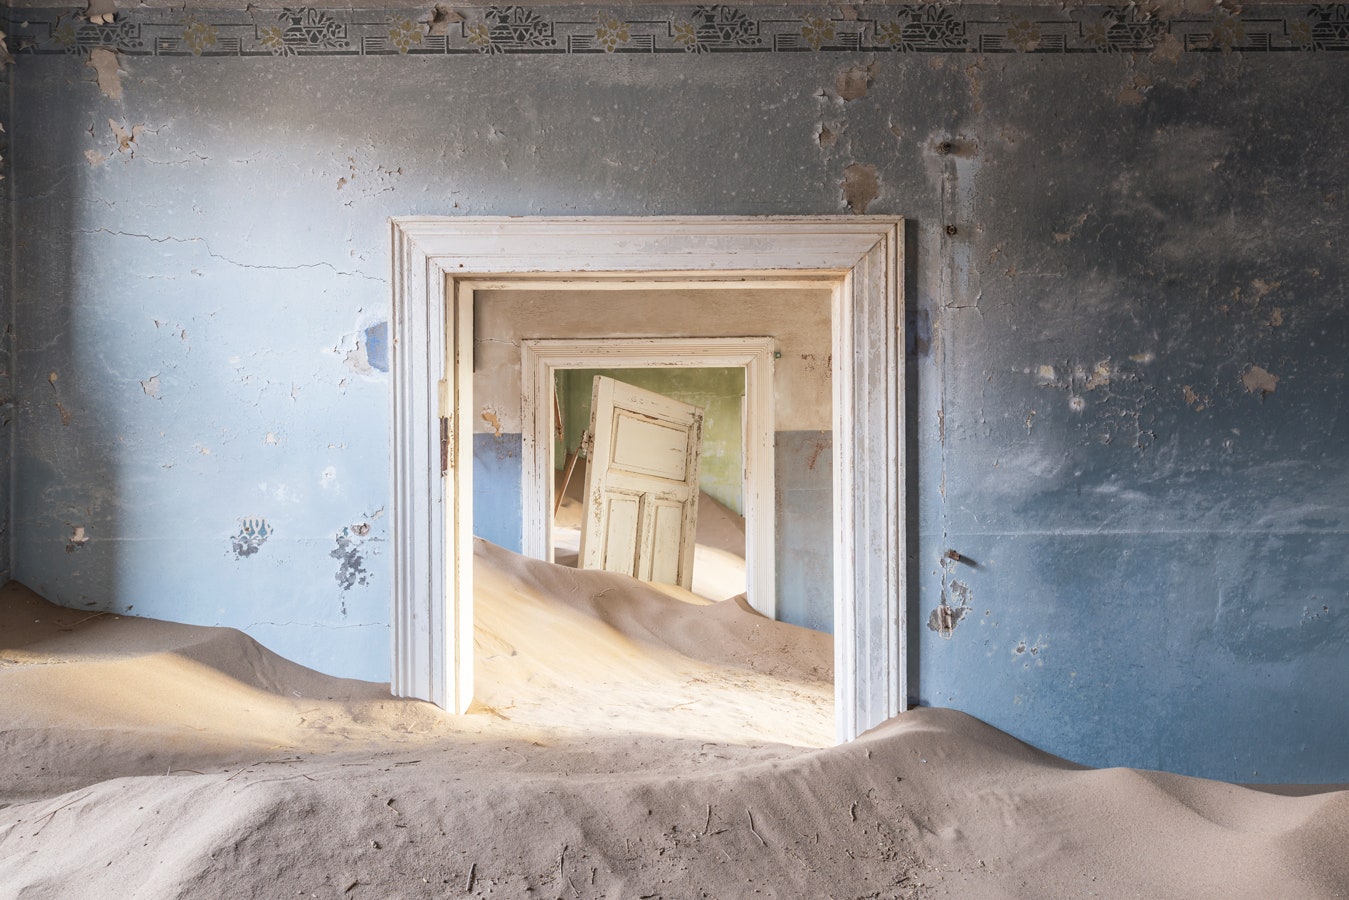 Мир без людей новая книга с фотографиями заброшенных мест от Ромена Вейона